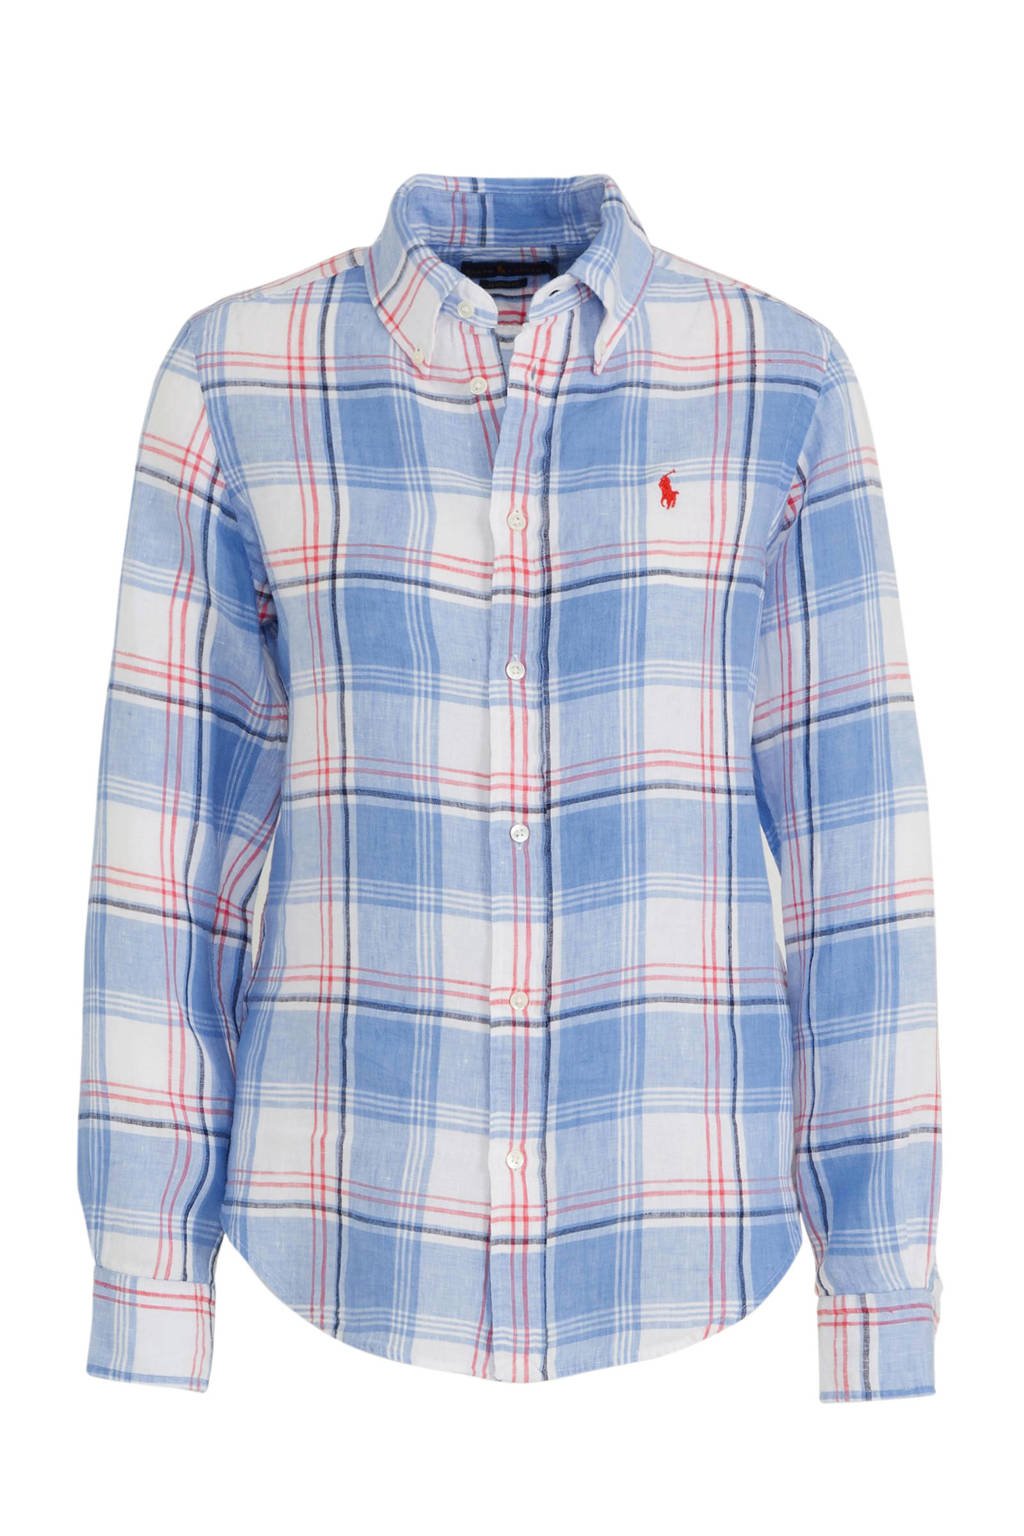 Verbazingwekkend POLO Ralph Lauren geruite linnen blouse blauw/rood/wit | wehkamp UY-42